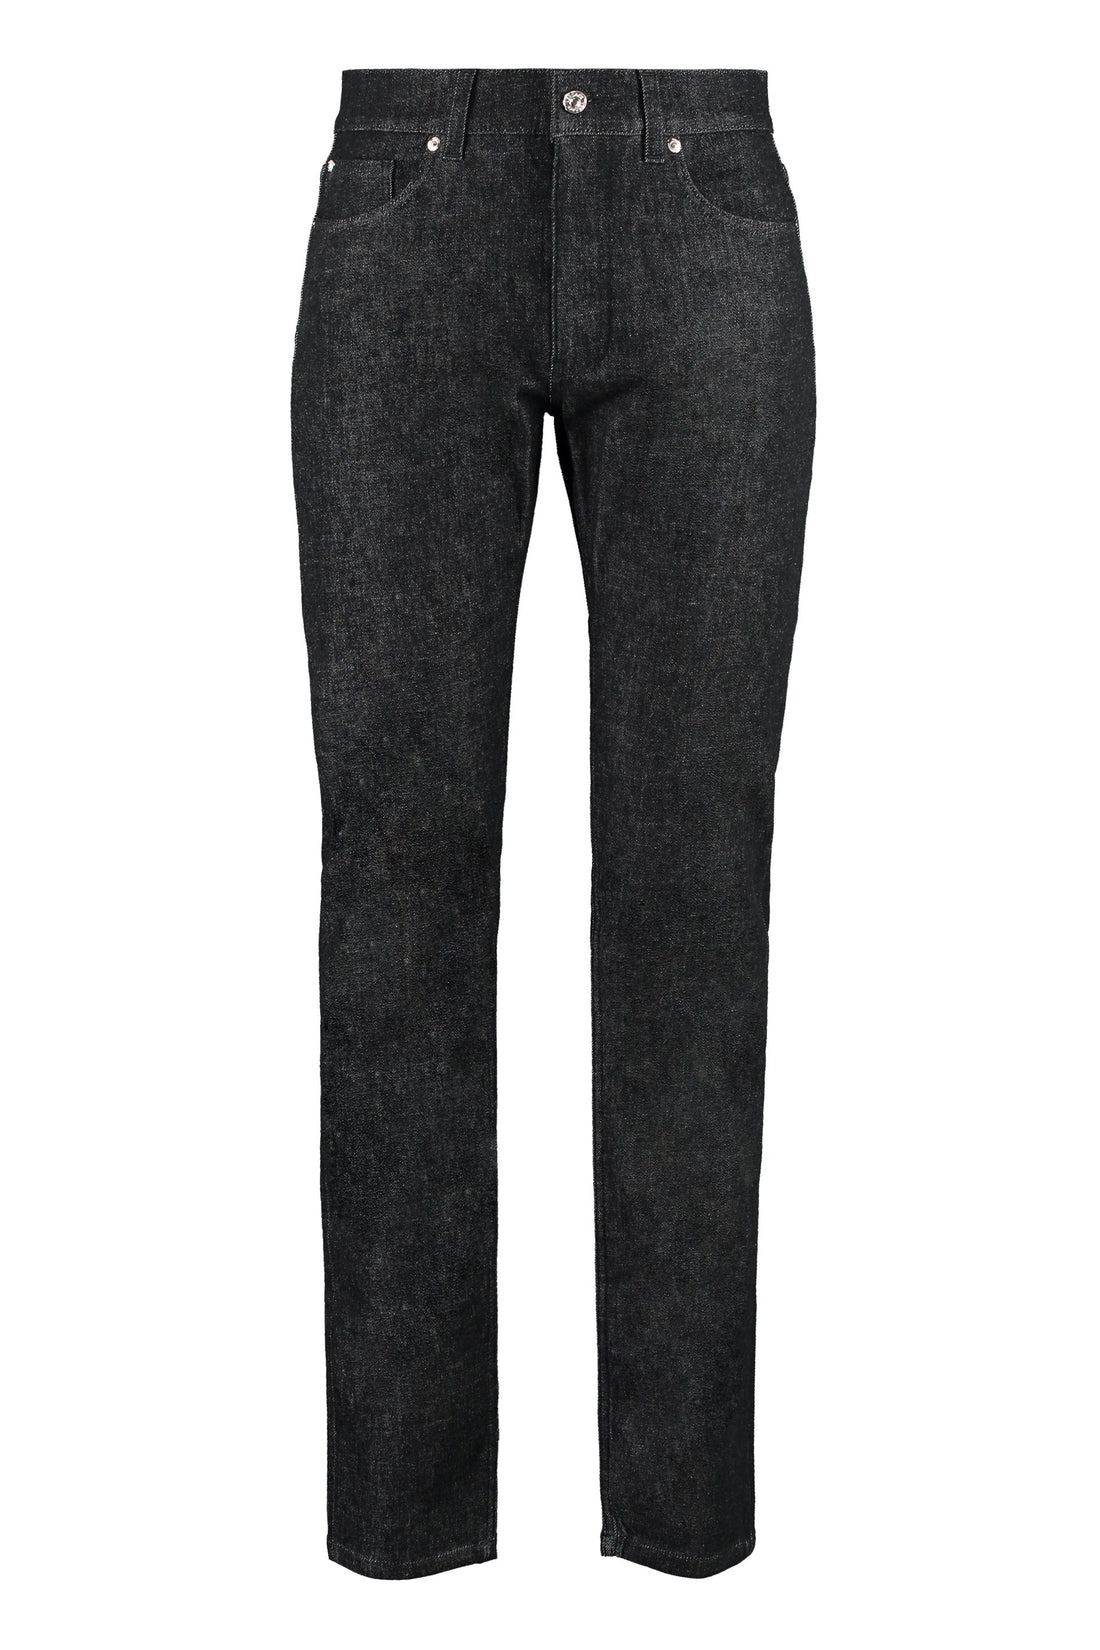 Versace-OUTLET-SALE-5-pocket slim fit jeans-ARCHIVIST